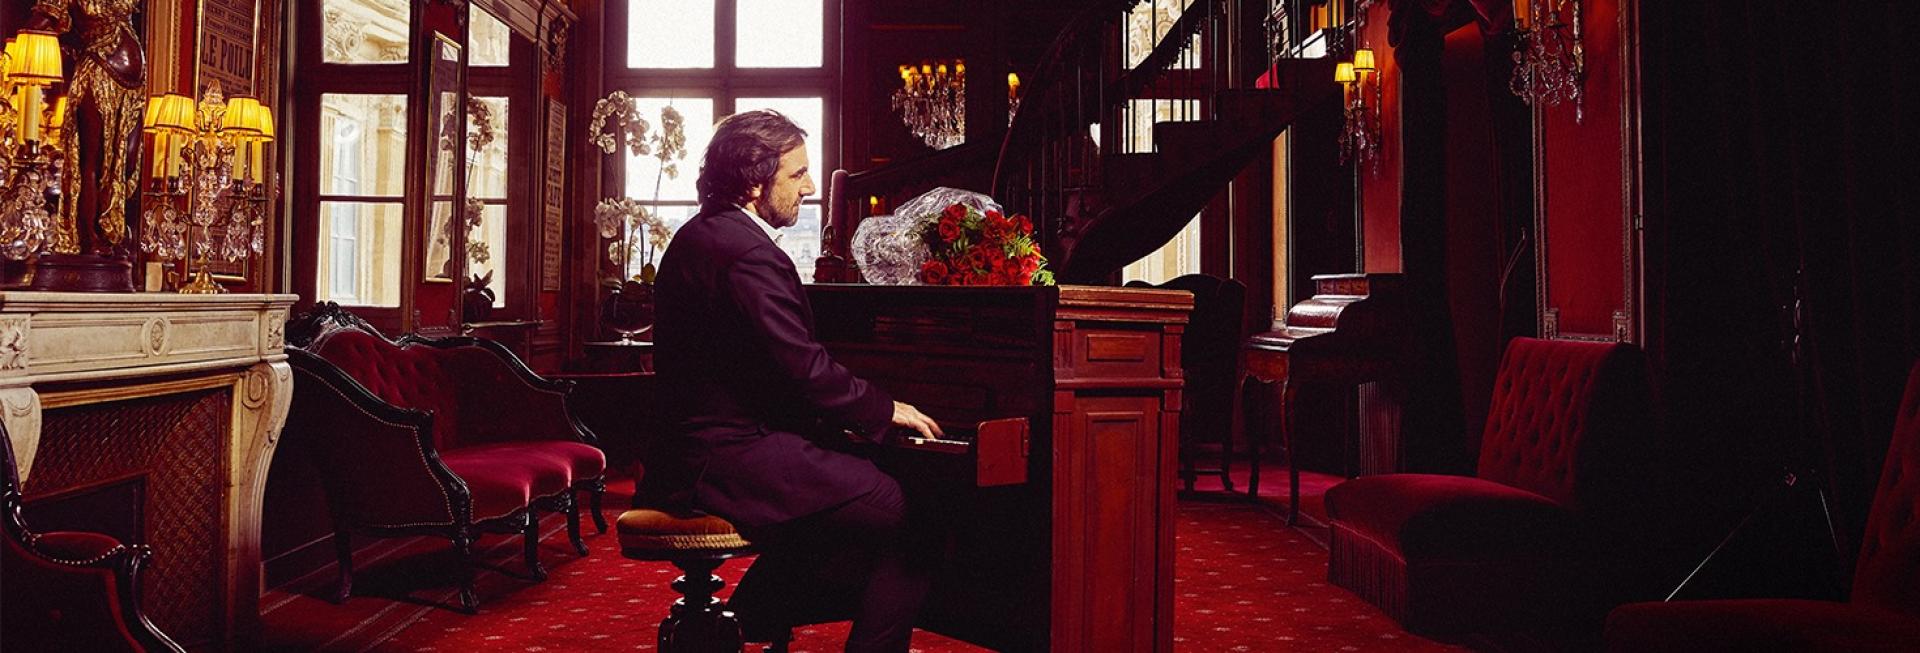 Les Pianos de Gainsbourg  | © YANN_ORHAN